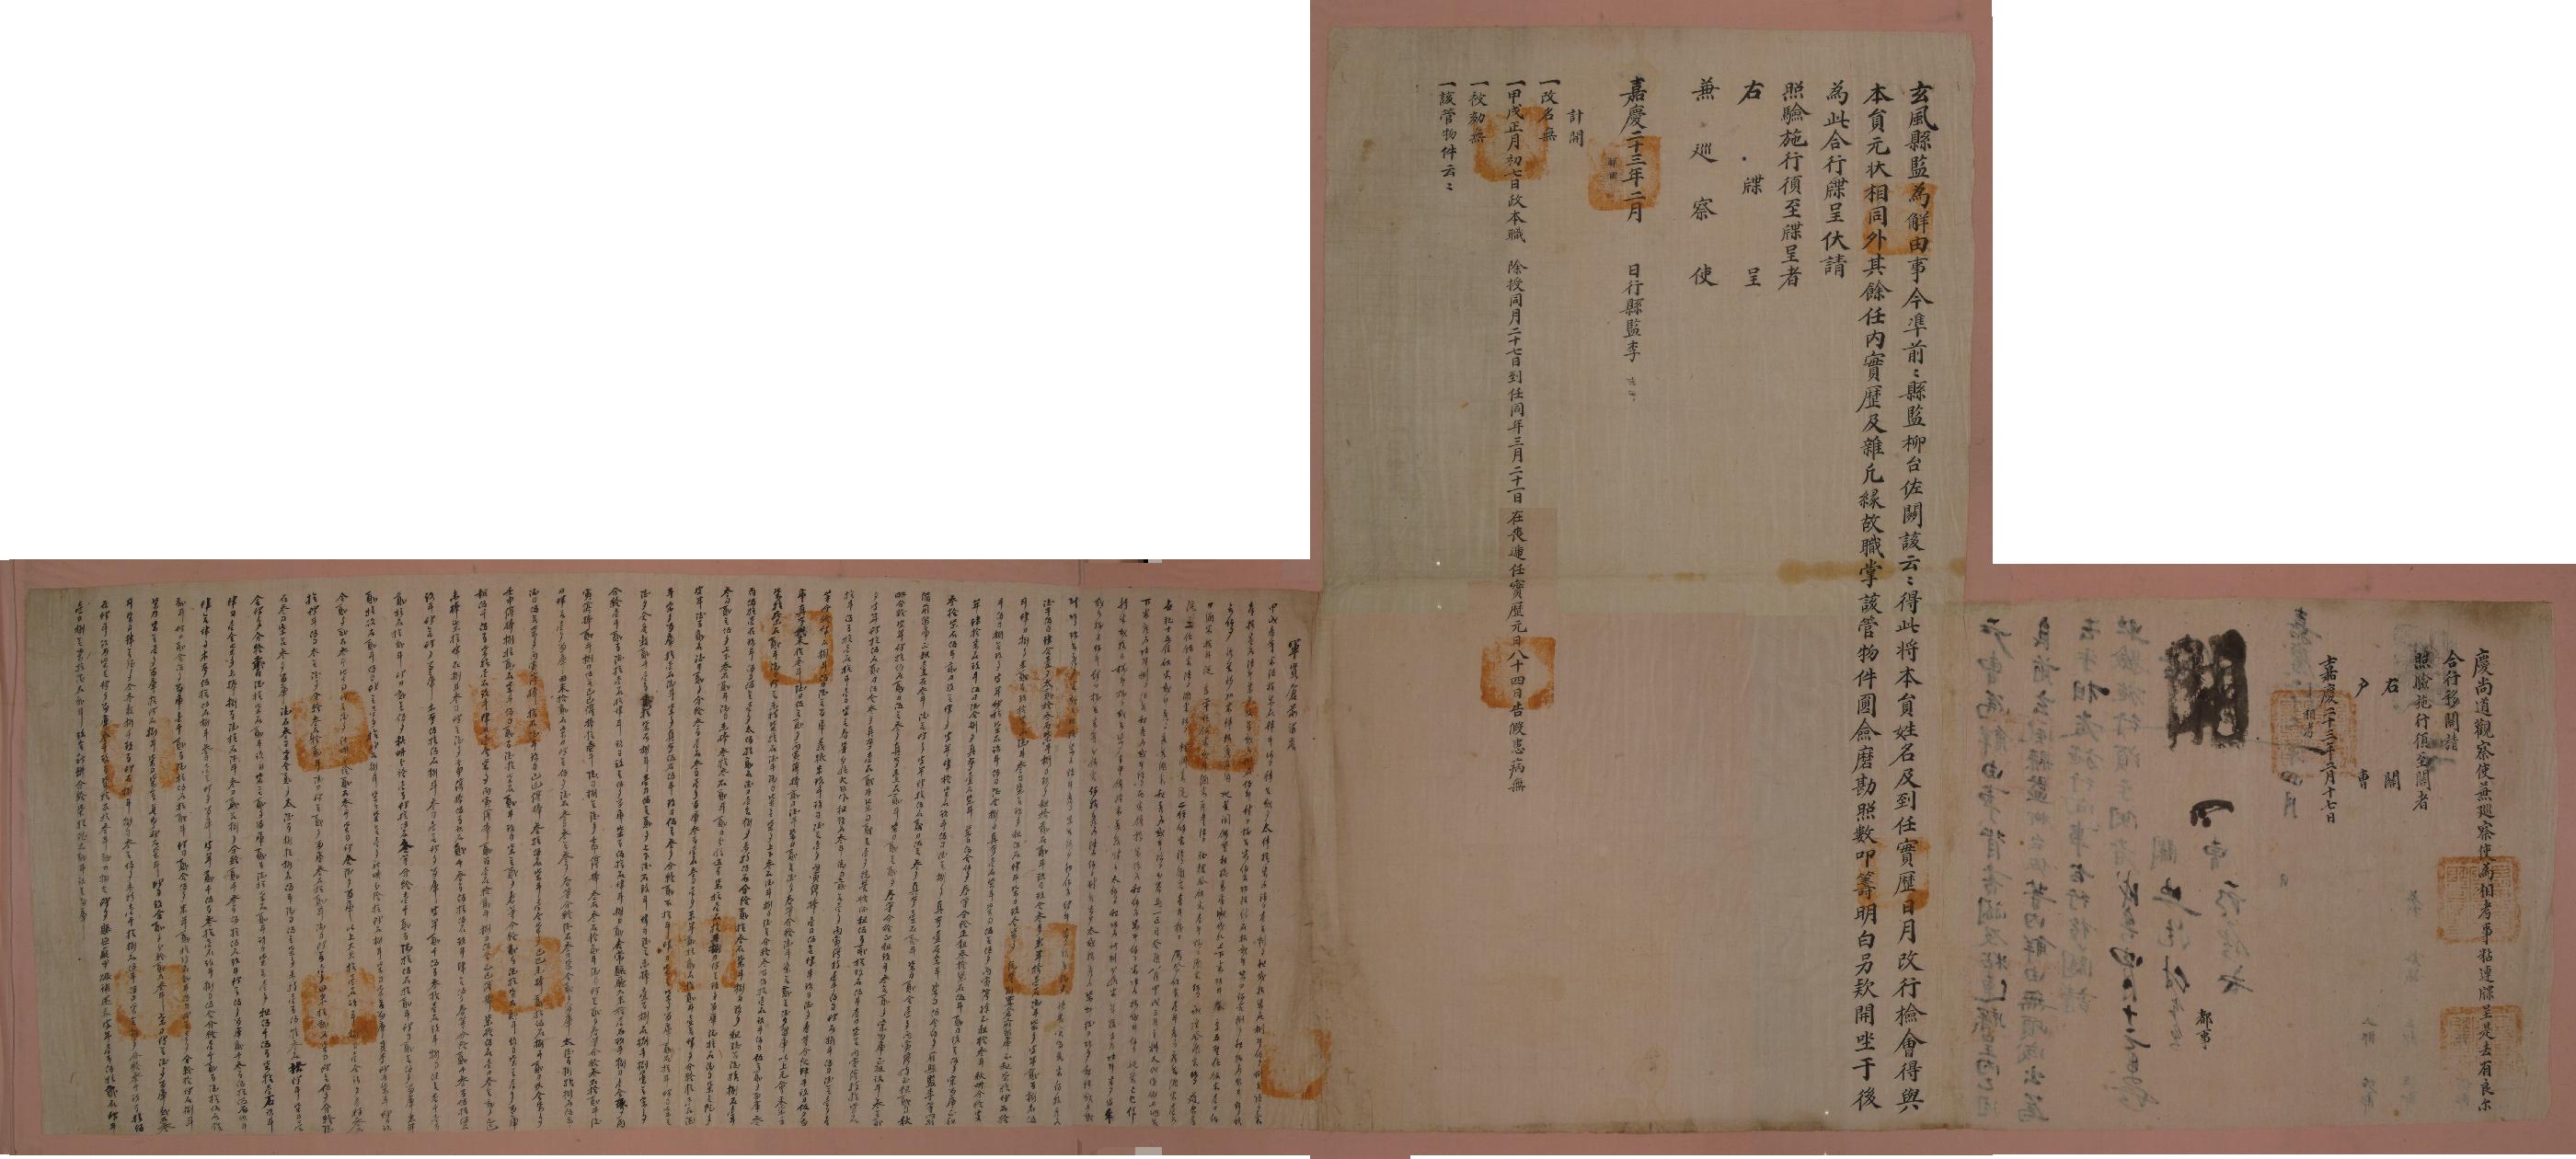 전현풍현감 류이좌(柳台佐)의 1818년 해유문서